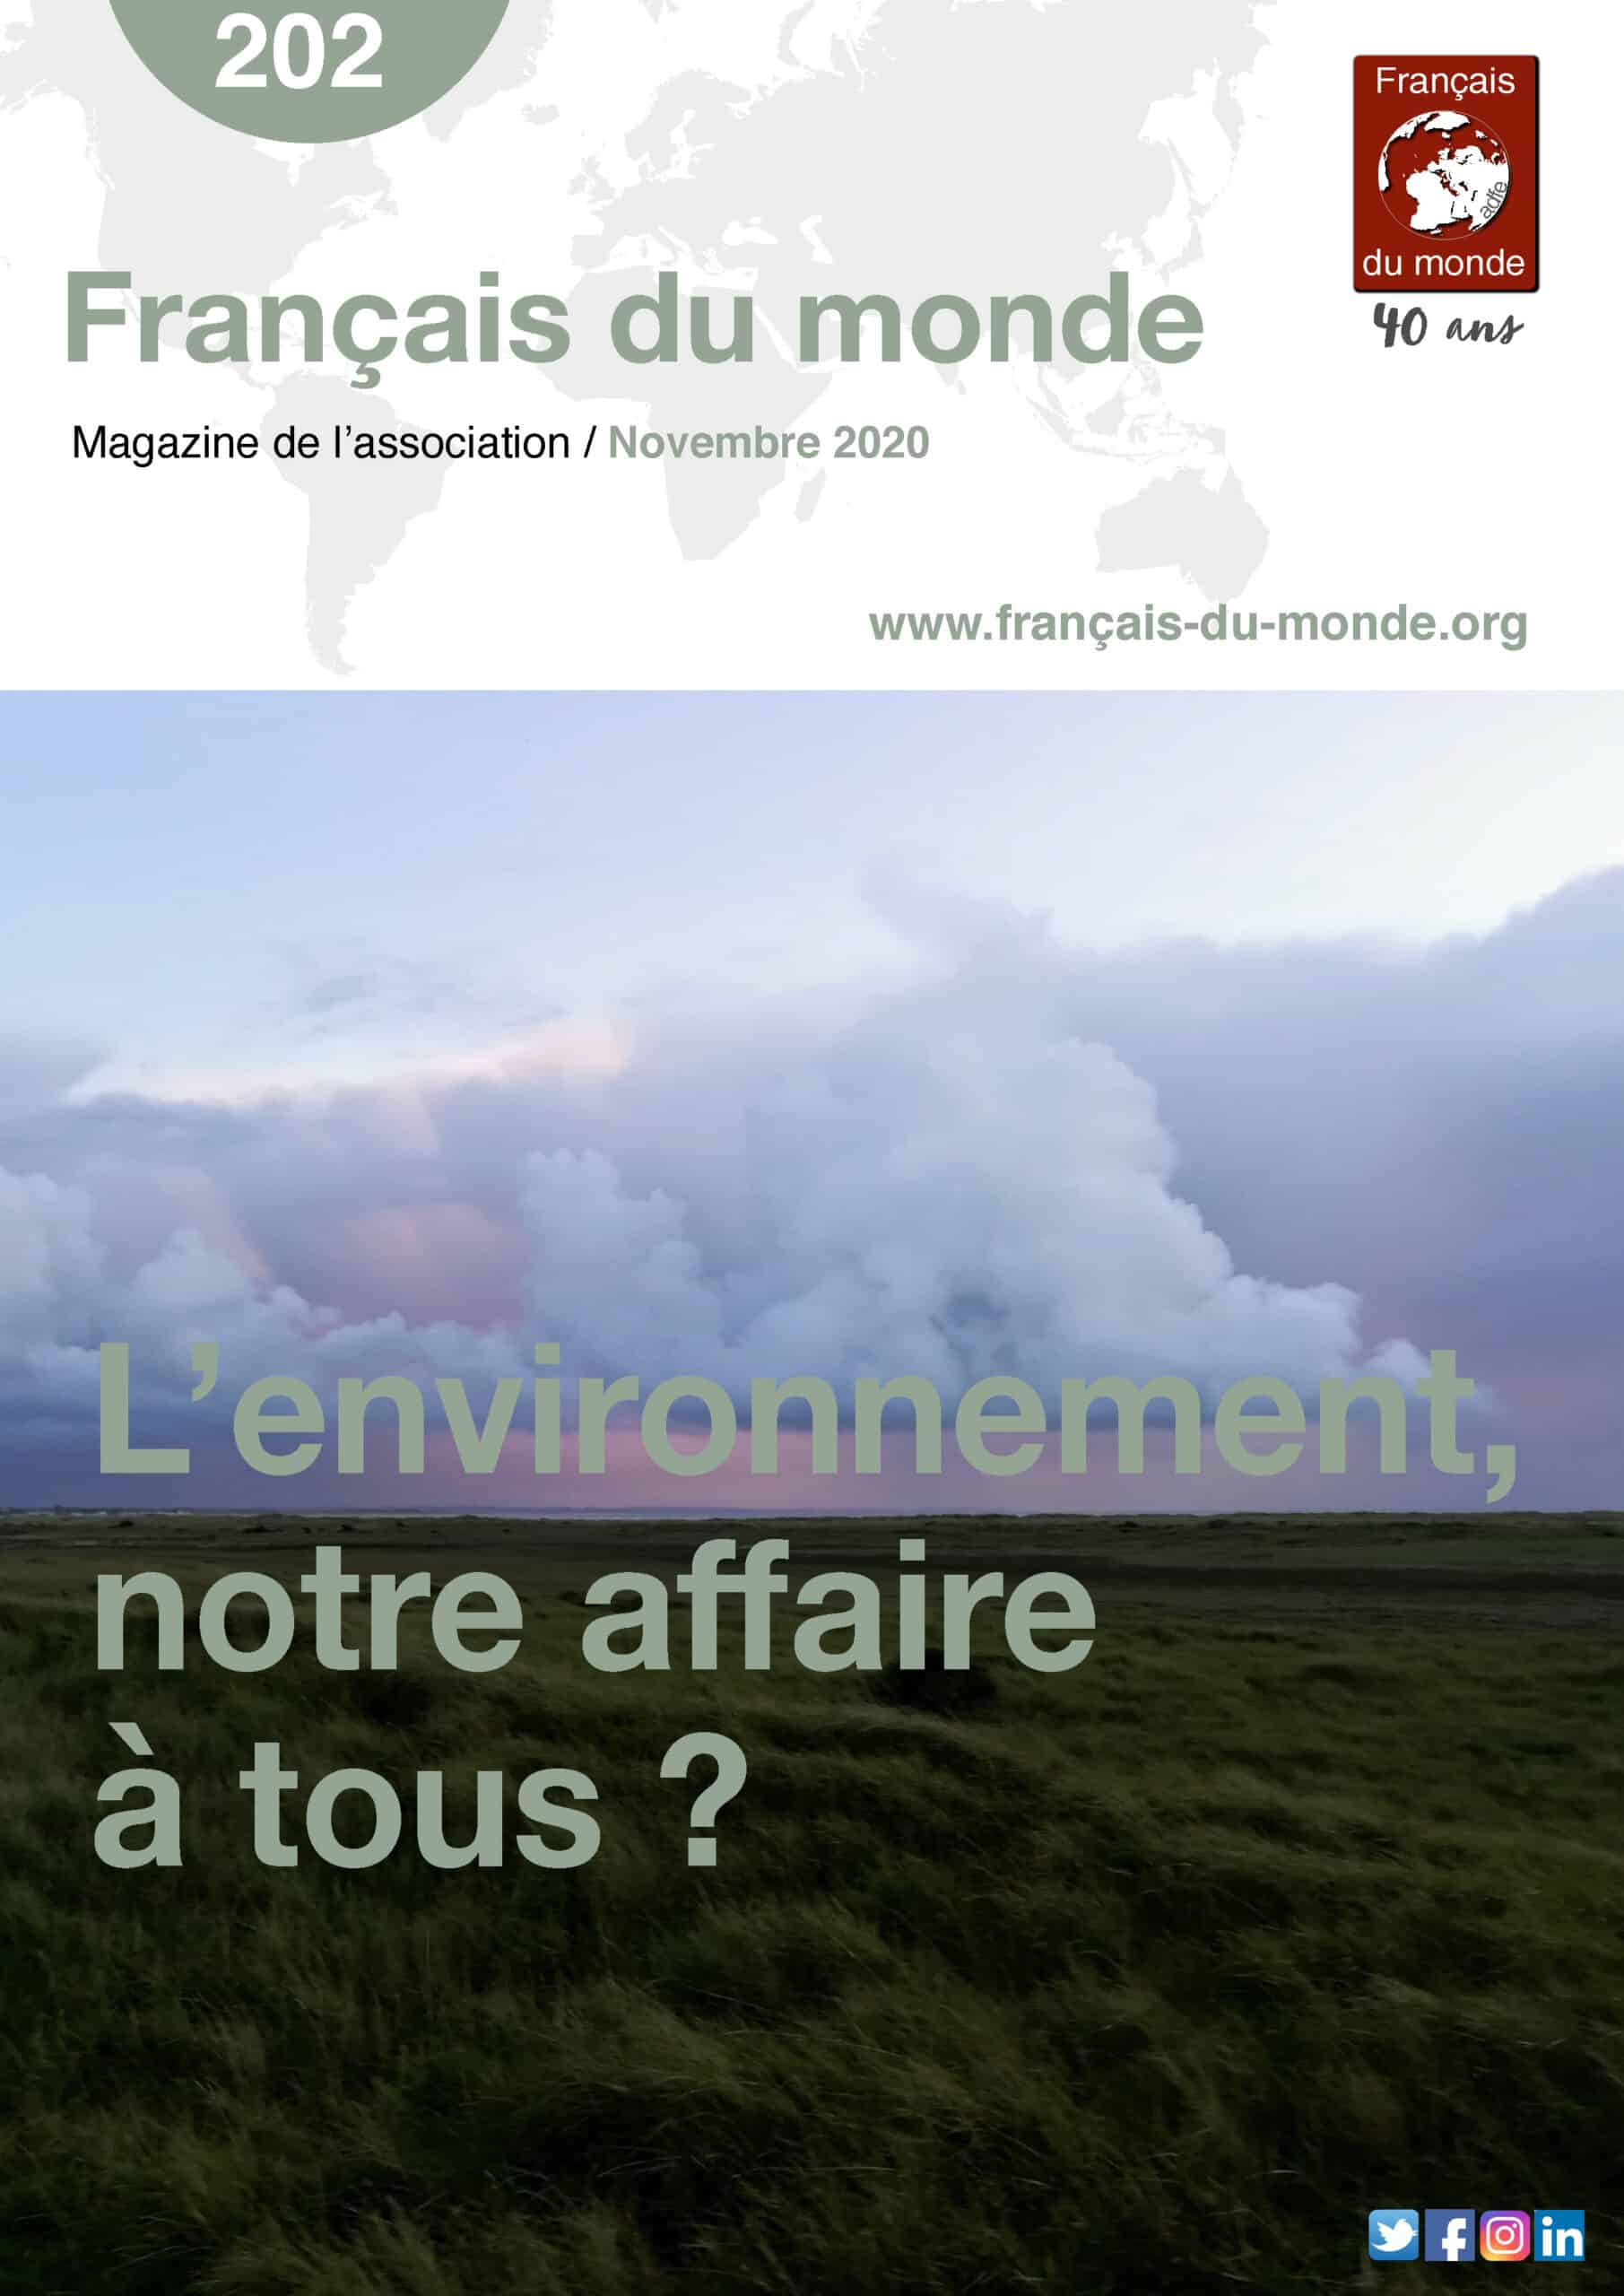 Le magazine de Français du monde - ADFE N°202